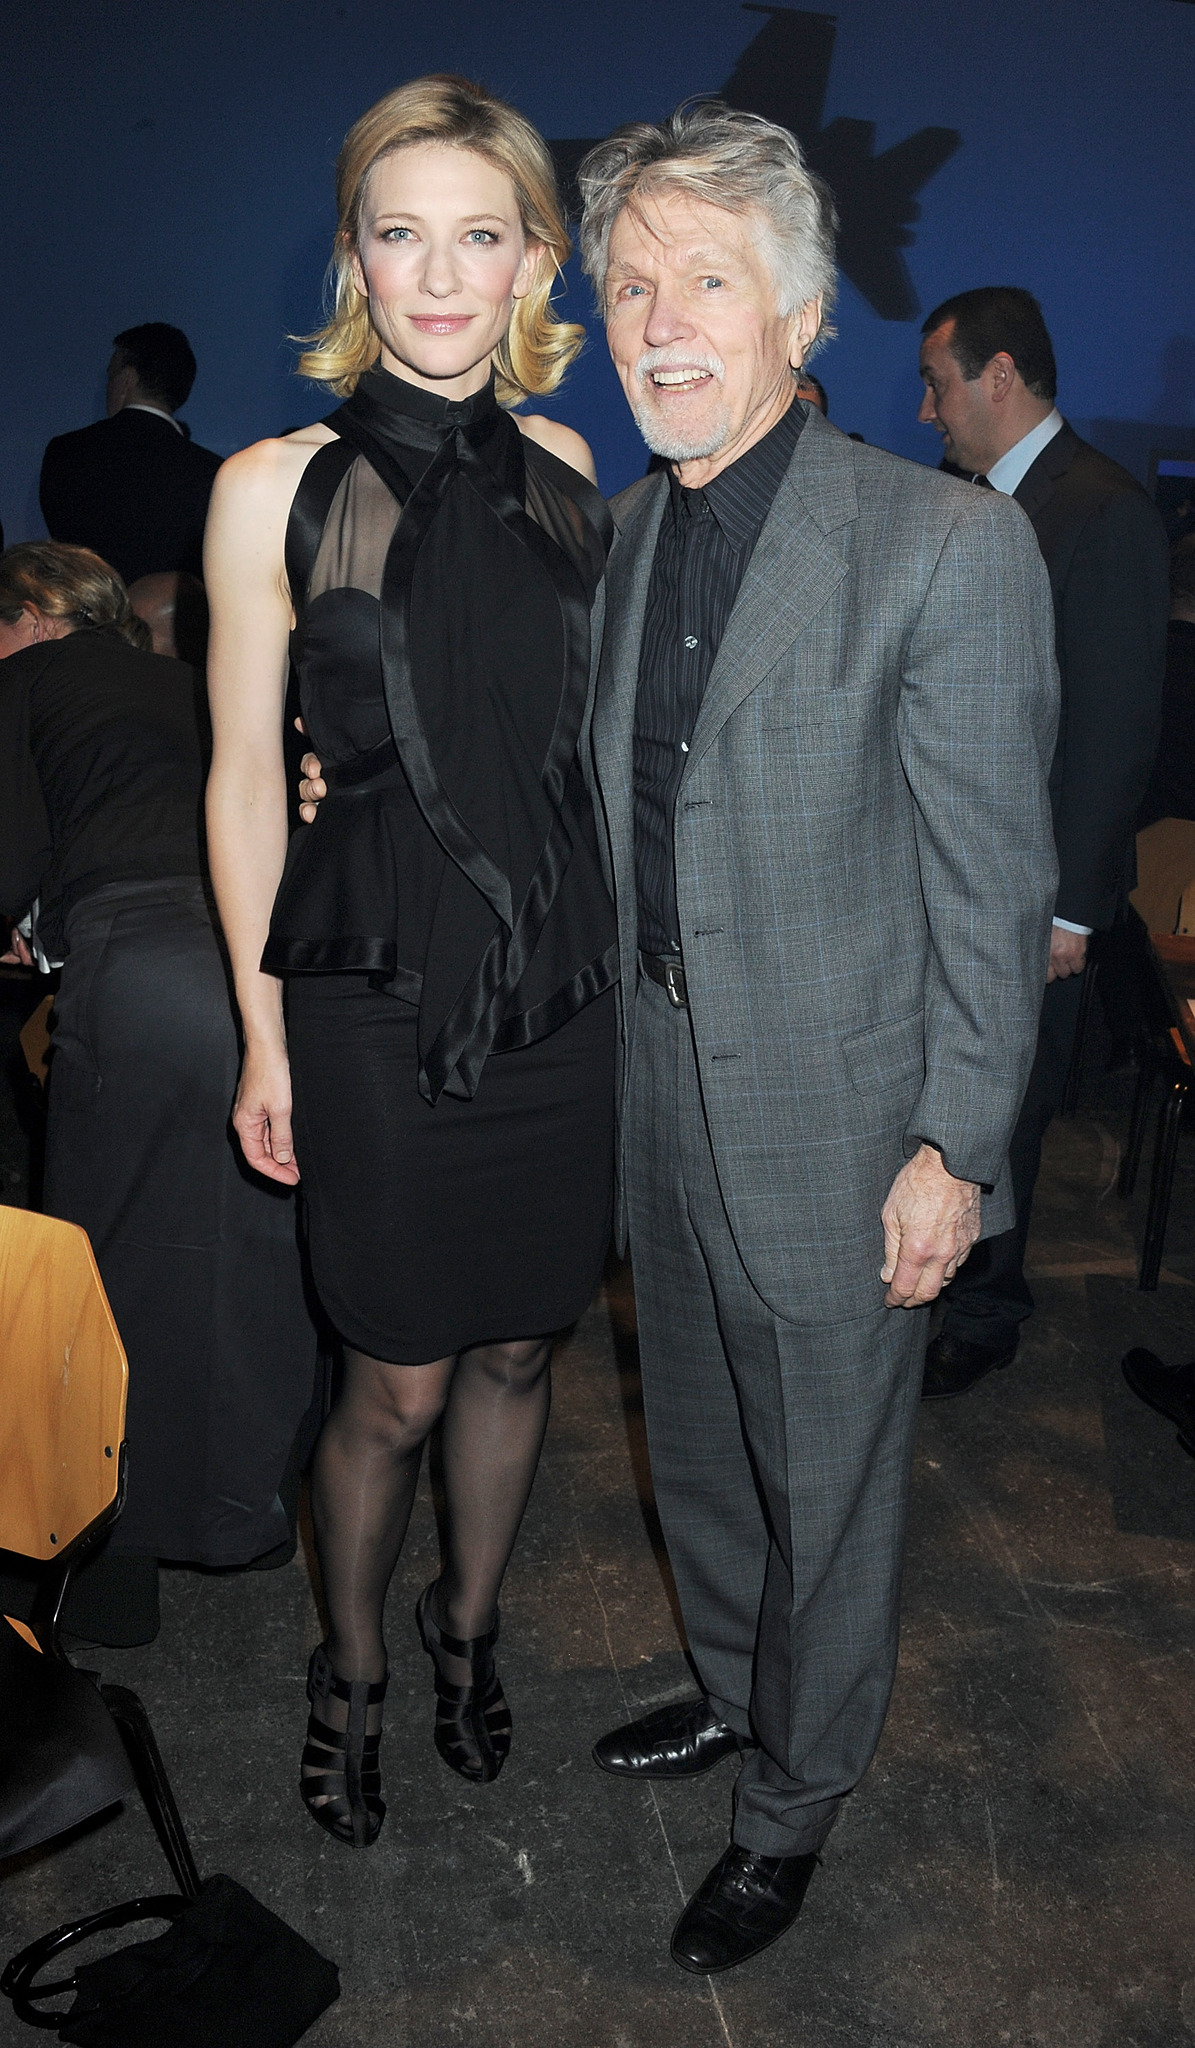 Tom Skerritt and Cate Blanchett